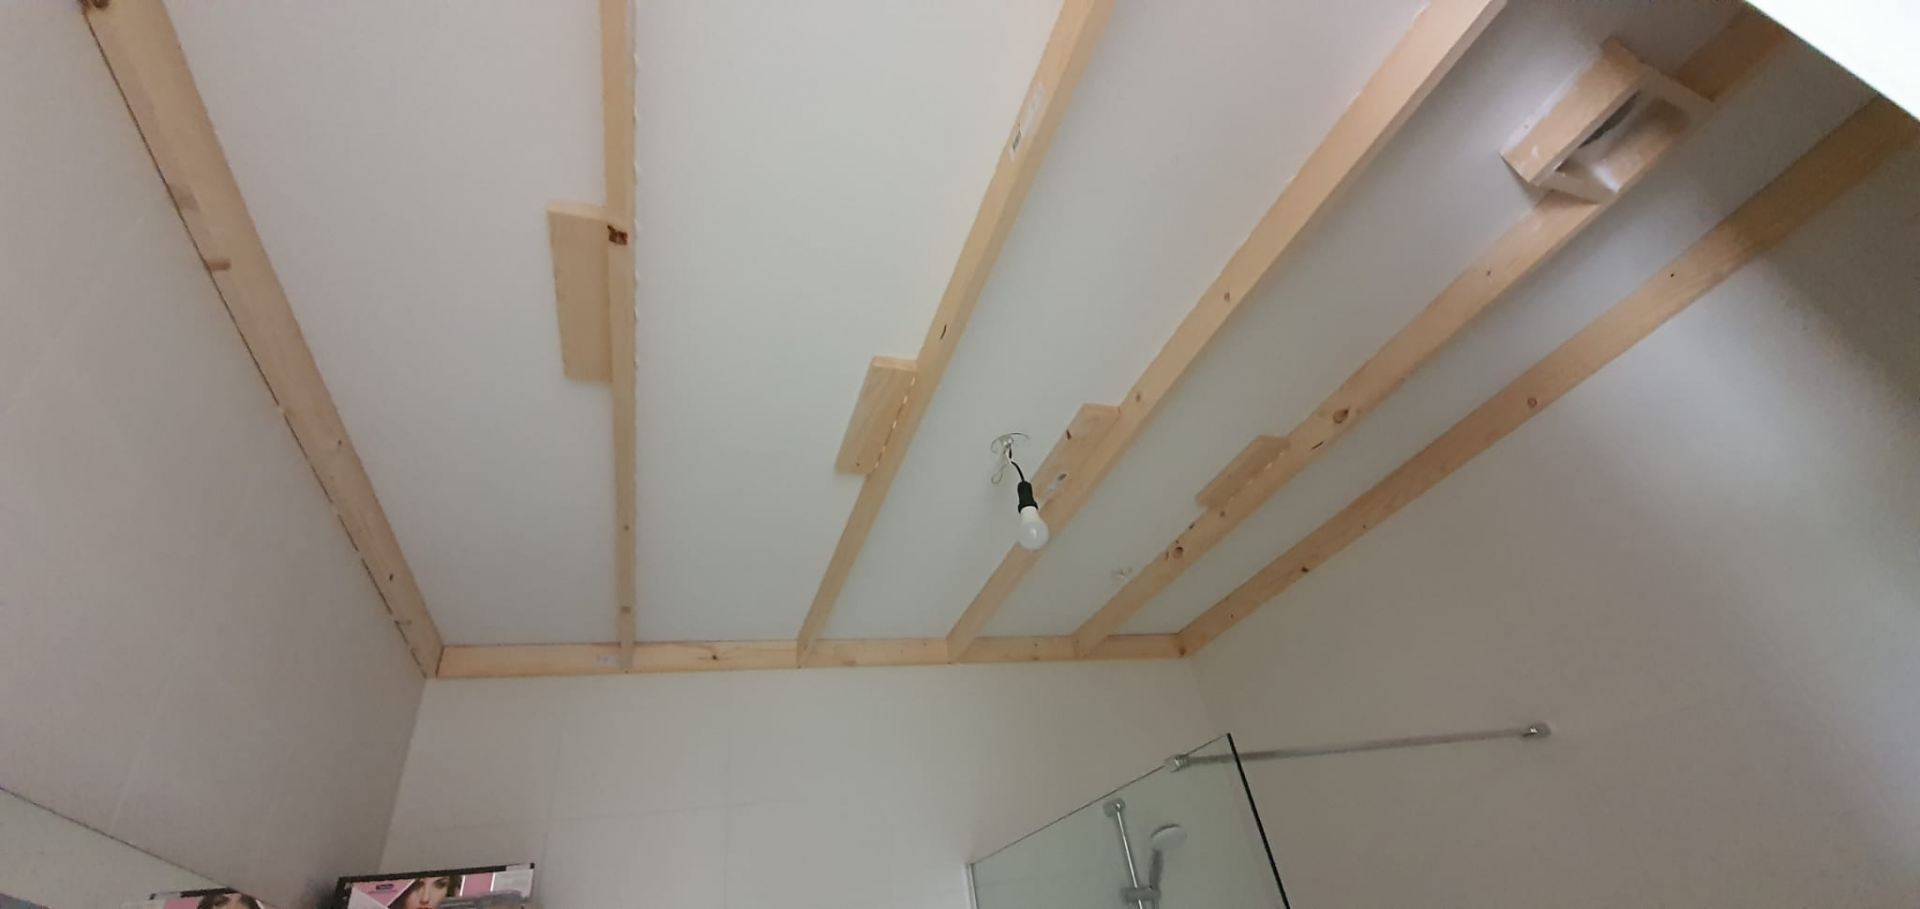 Plafond van afwasbare matte kunststof panelen met inbouwspots verlaagd - De Jacob Drenth